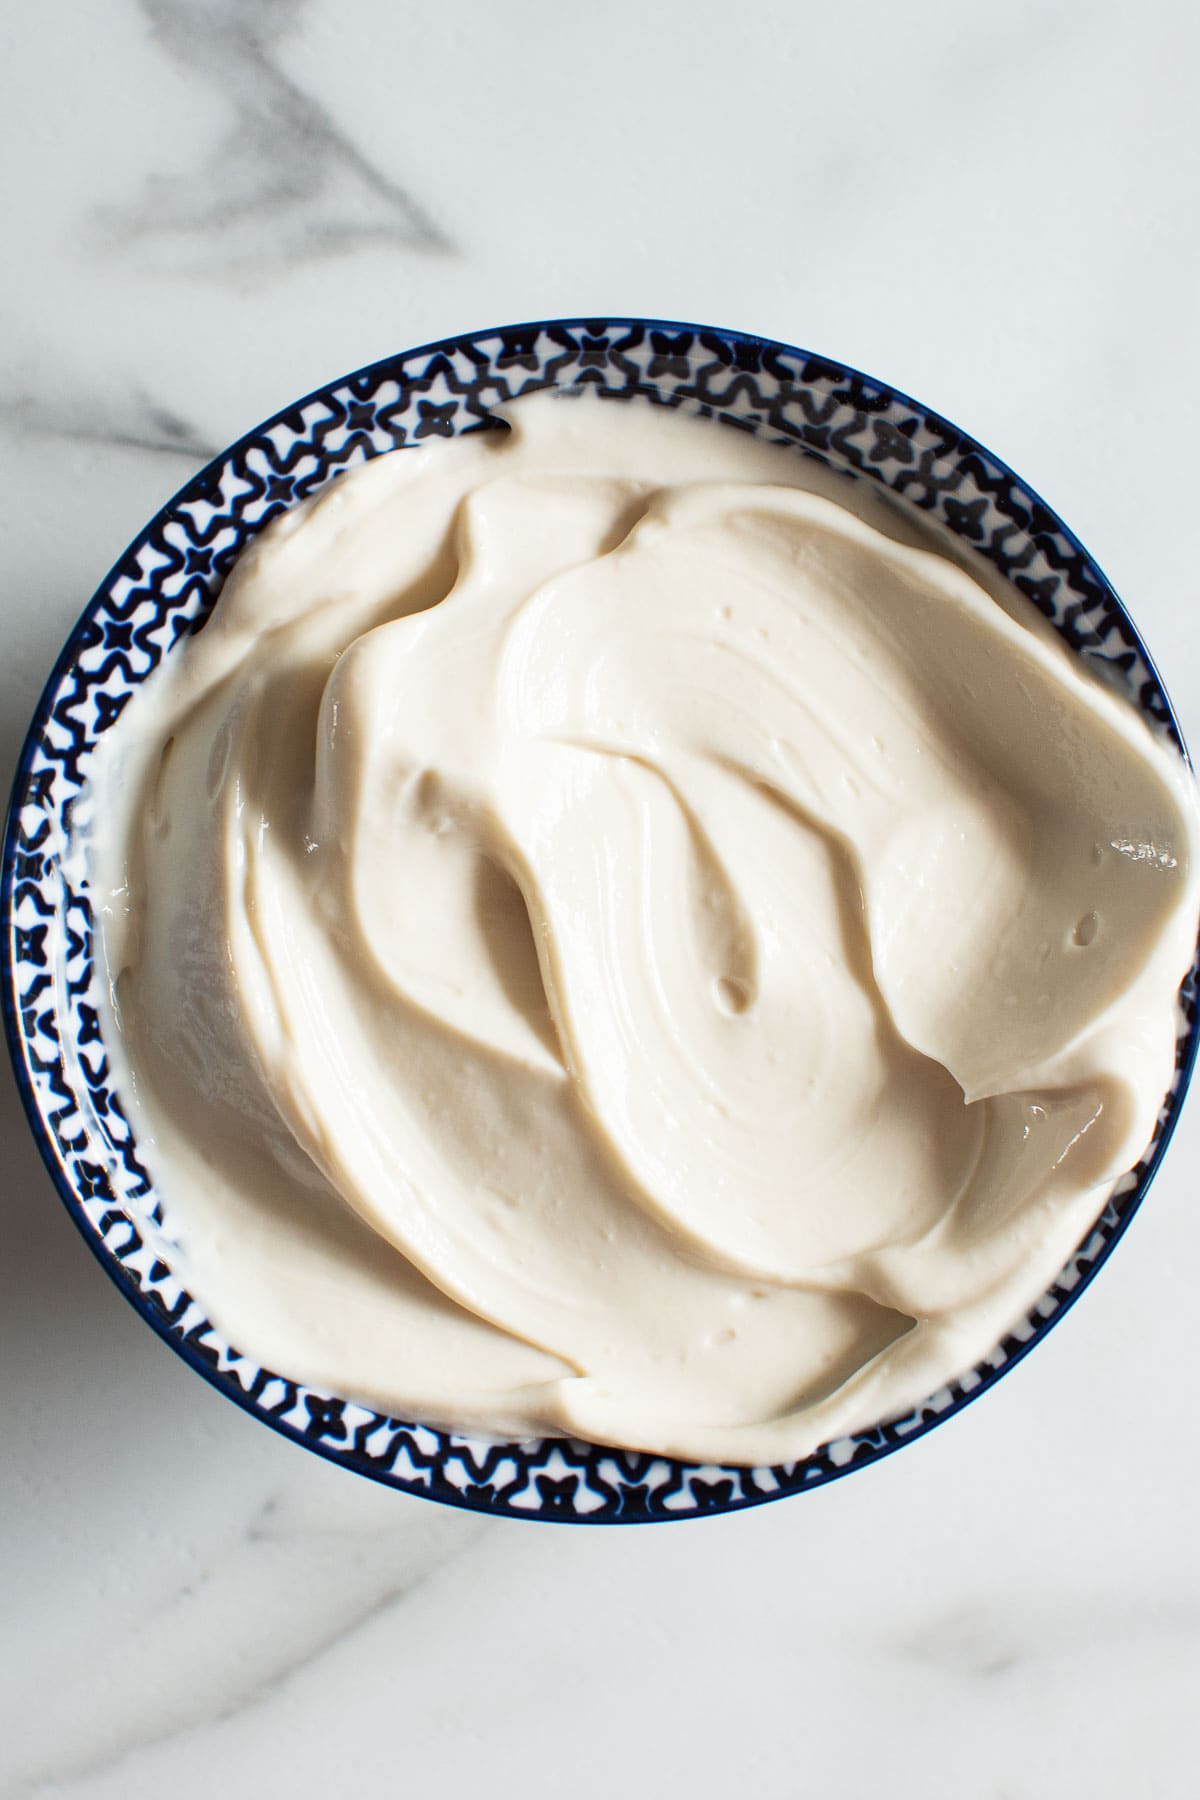 Healthy greek yogurt frosting in a bowl.